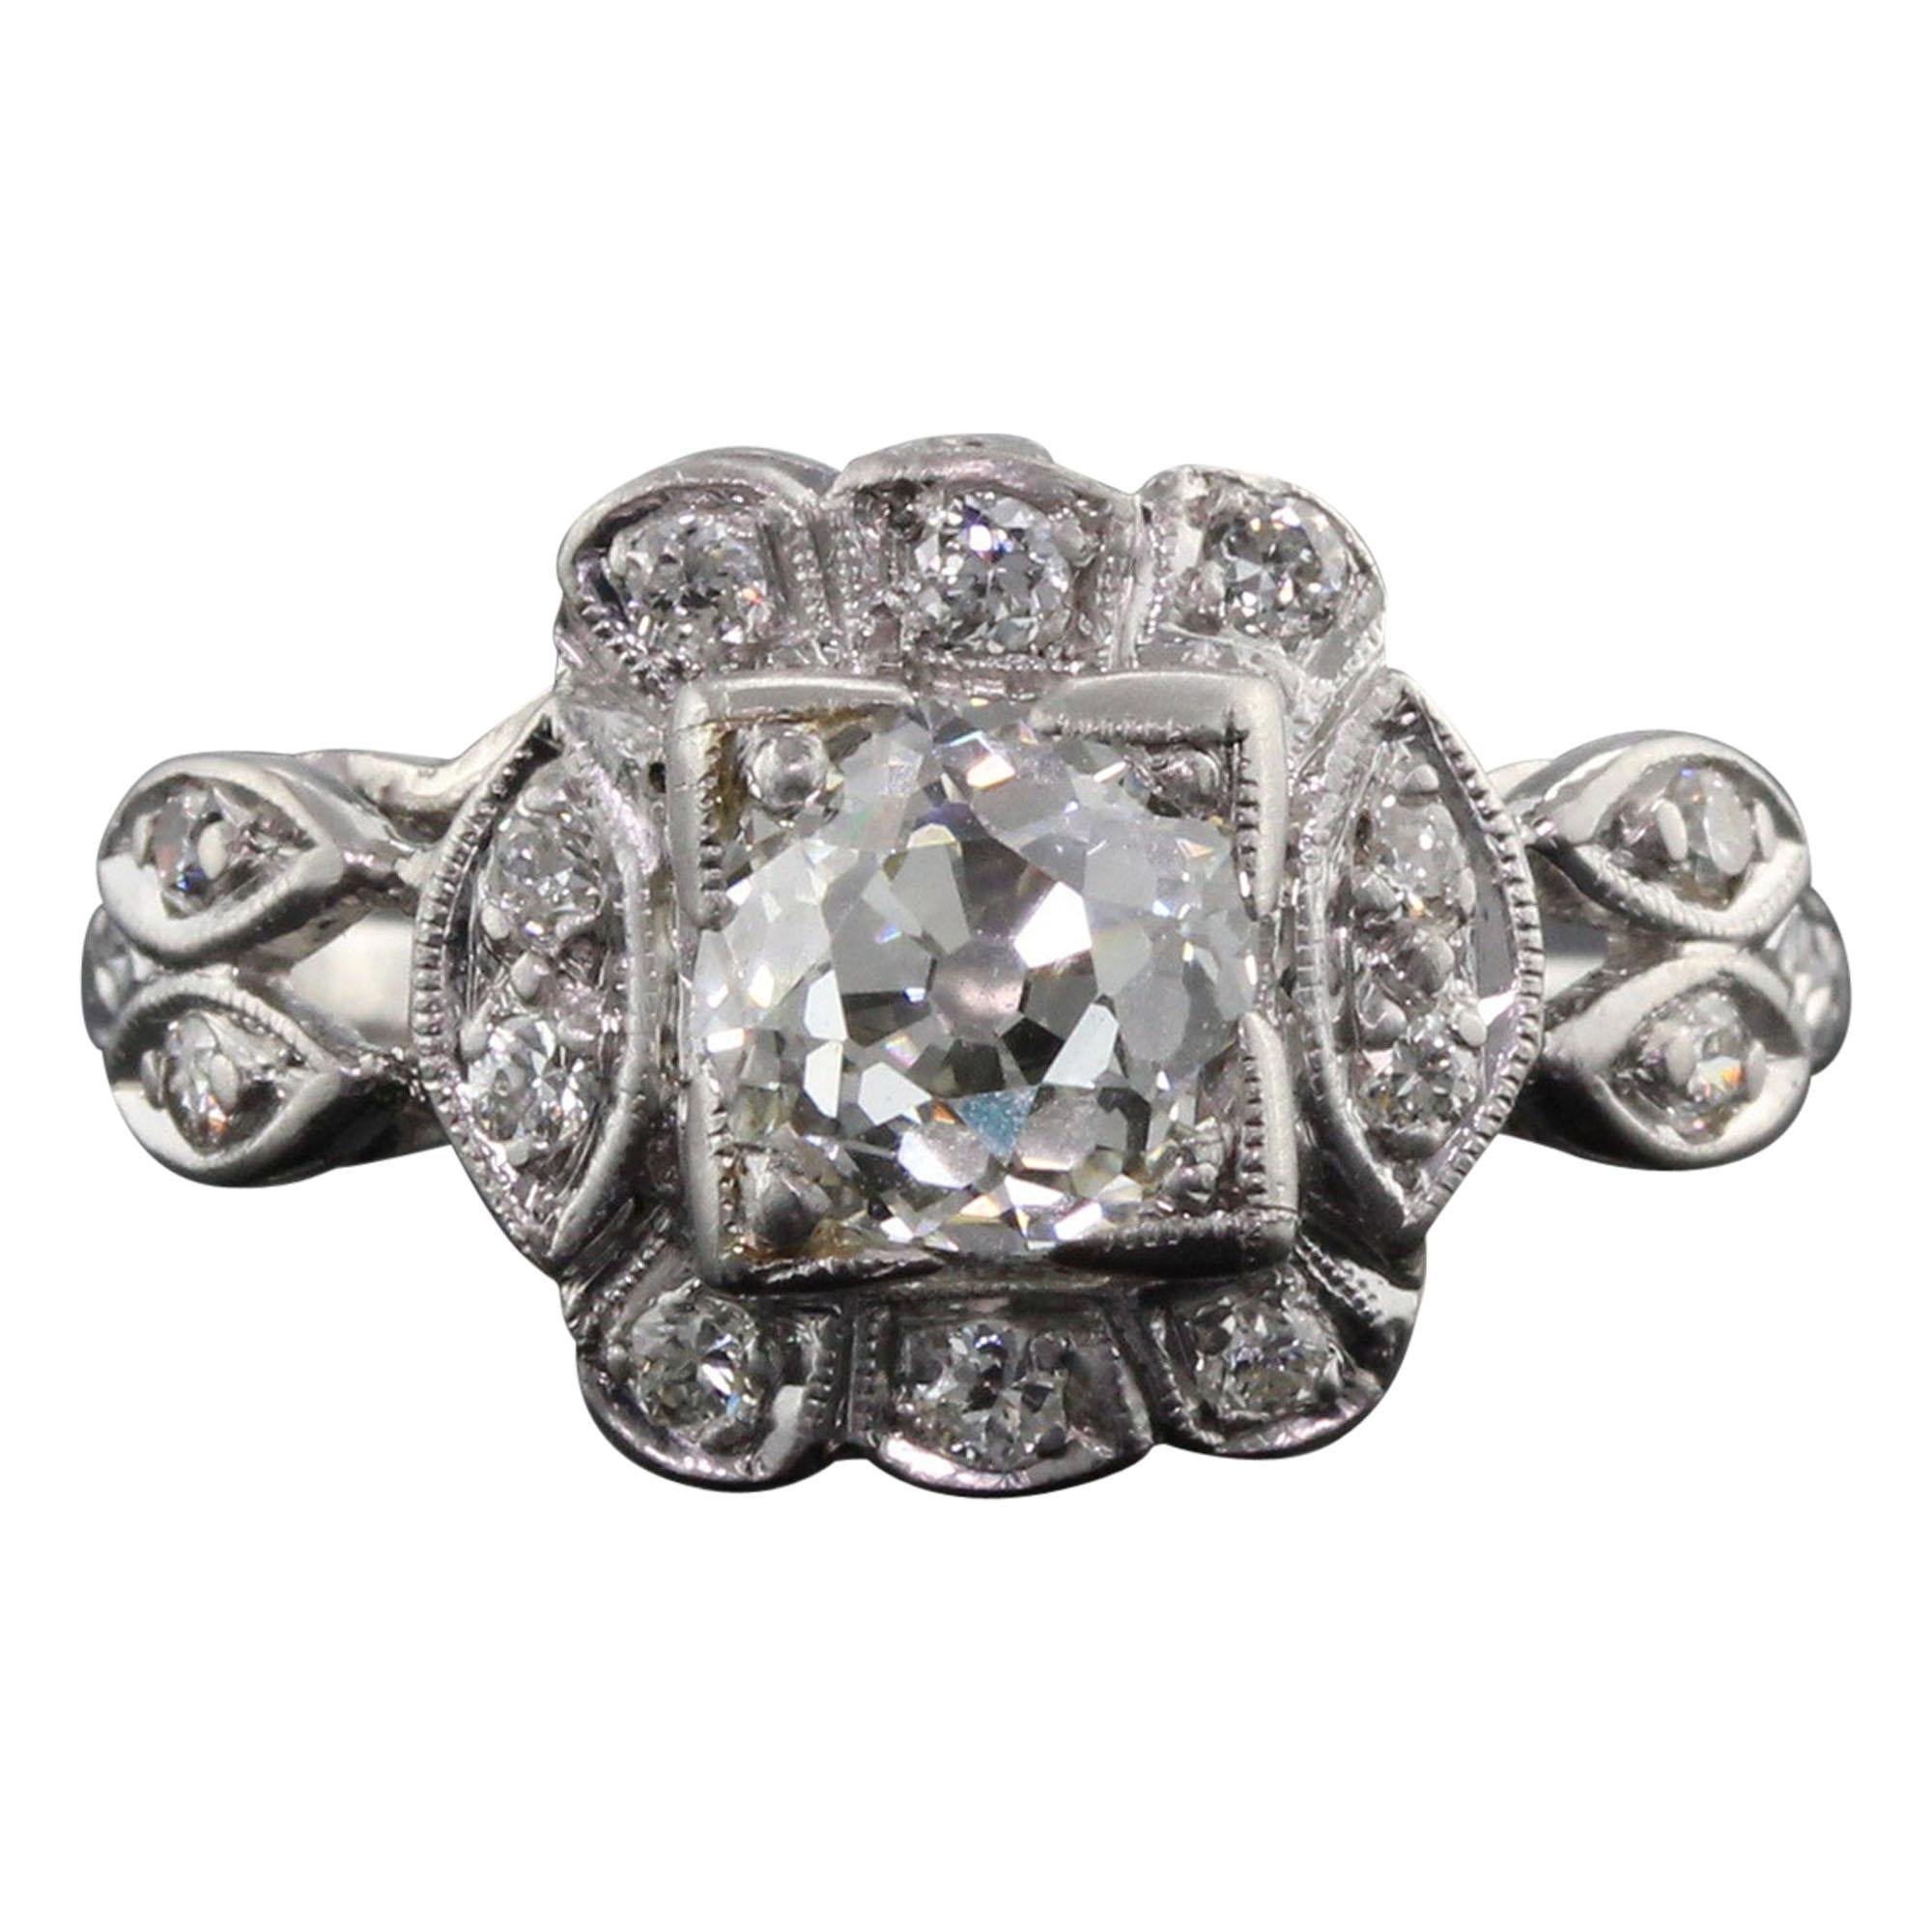 Antique Art Deco Platinum and Diamond Engagement Ring GIA